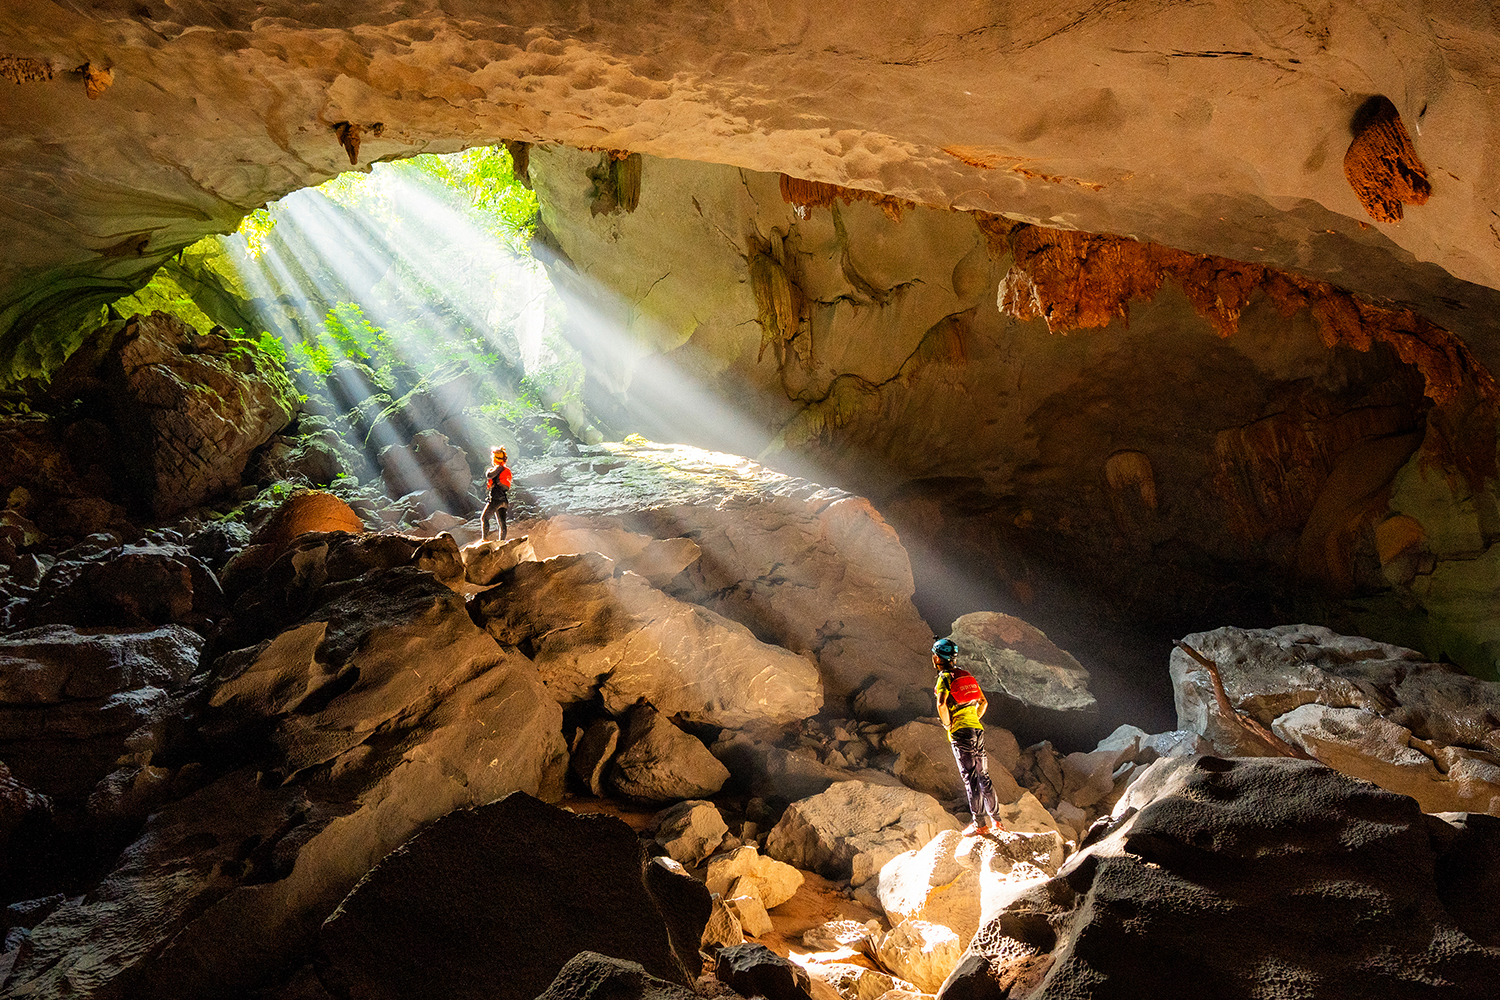 Oxalis Adventure đang khai thác nhiều tour mạo hiểm tại Vườn quốc gia Phong Nha-Kẻ Bàng. Ảnh: Oxalis Adventure.